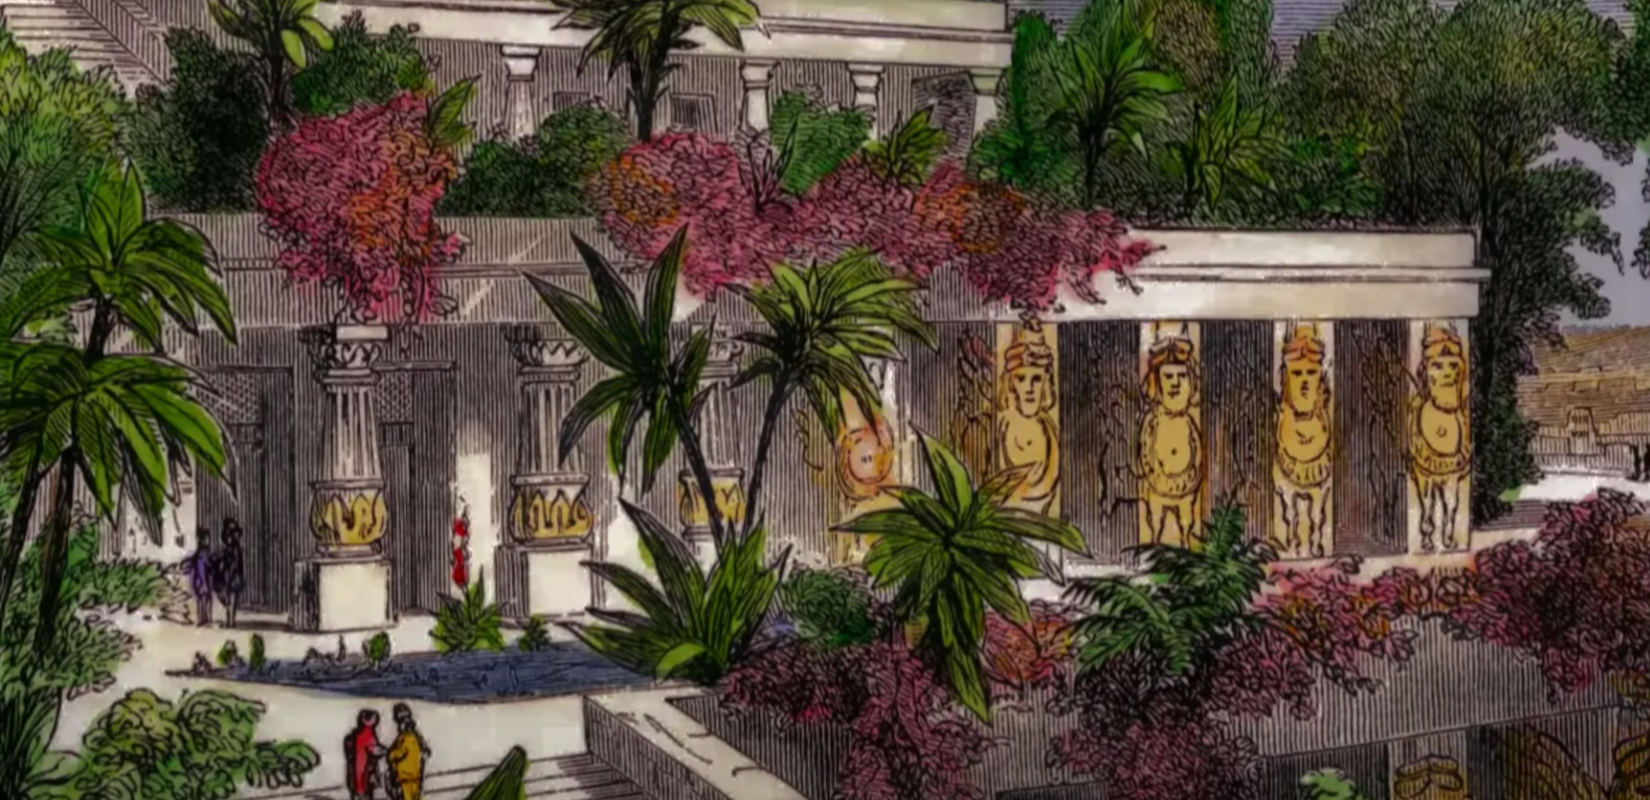 Một trong bảy kỳ quan của thế giới cổ đại - Vườn treo Babylon huyền thoại - được cho là do Nebuchadnezzar xây dựng. Tuy nhiên, người Babylon cũng vì điều này mà bắt đầu trở nên cuồng vọng, thay vì tôn thờ Chúa, họ bắt đầu sùng bái các tượng bằng gỗ, thậm chí còn muốn tranh đoạt cao thấp với Chúa (Ảnh chụp màn hình)